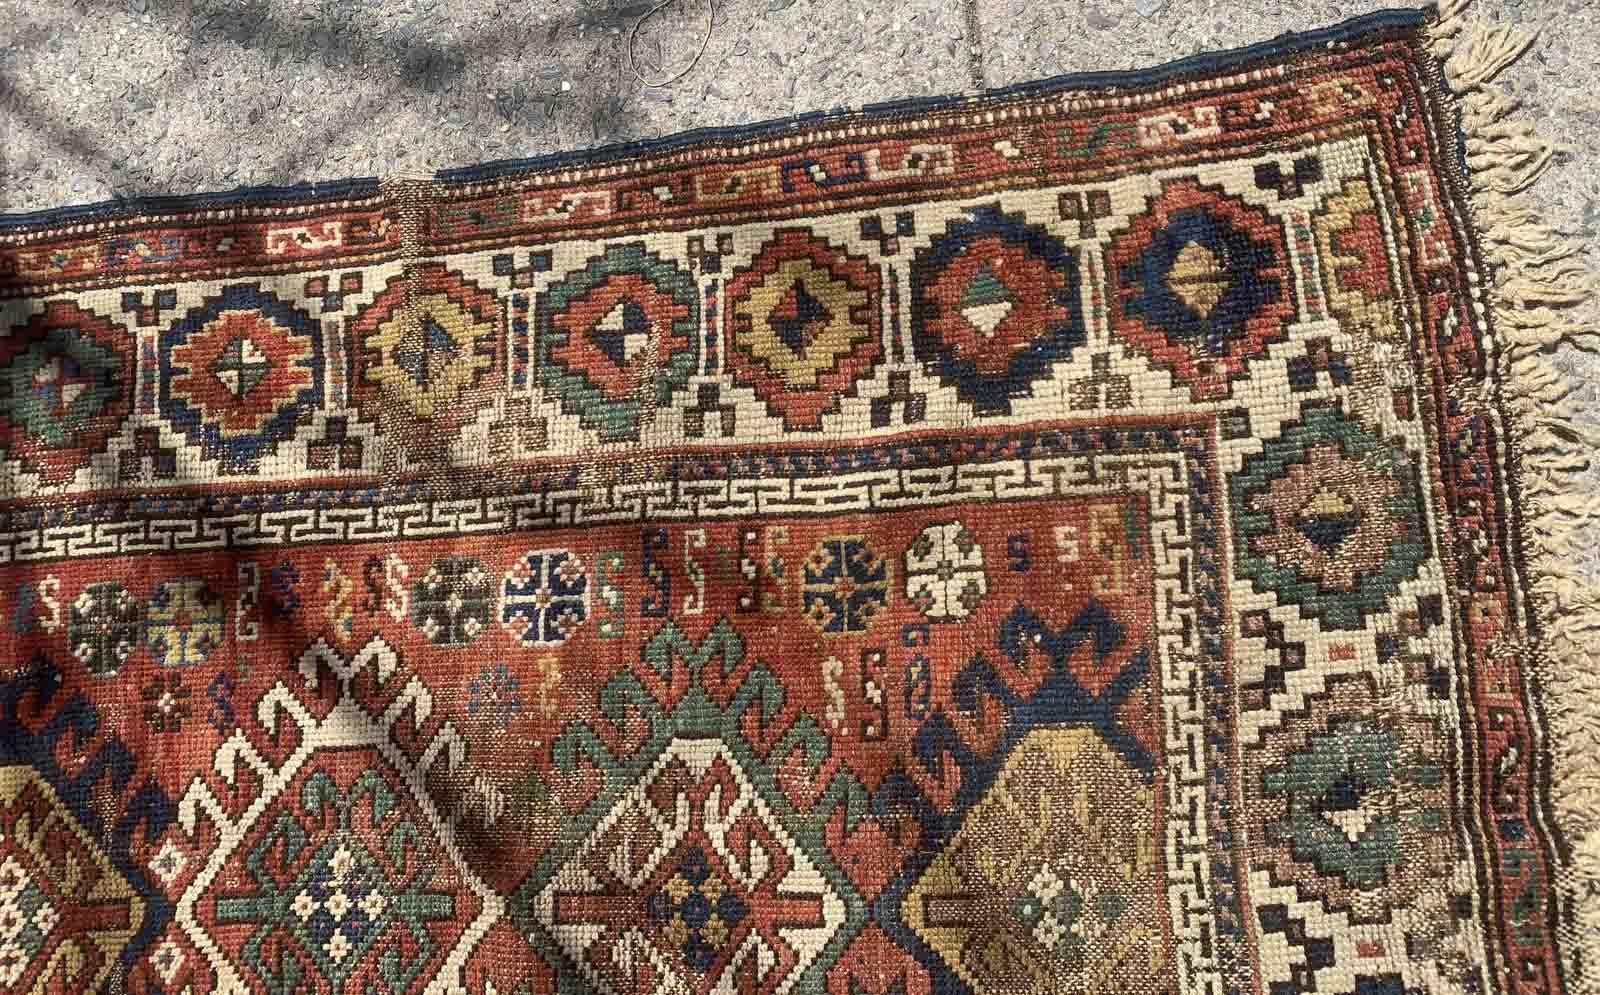 Tapis caucasien kazakh ancien, fait à la main, de couleur rouge. Le tapis date de la fin du XIXe siècle et est en mauvais état.

-état : original, dégradé,

-vers les années 1880,

-taille : 3,4' x 4,4' (103cm x 134cm),

-matériau :